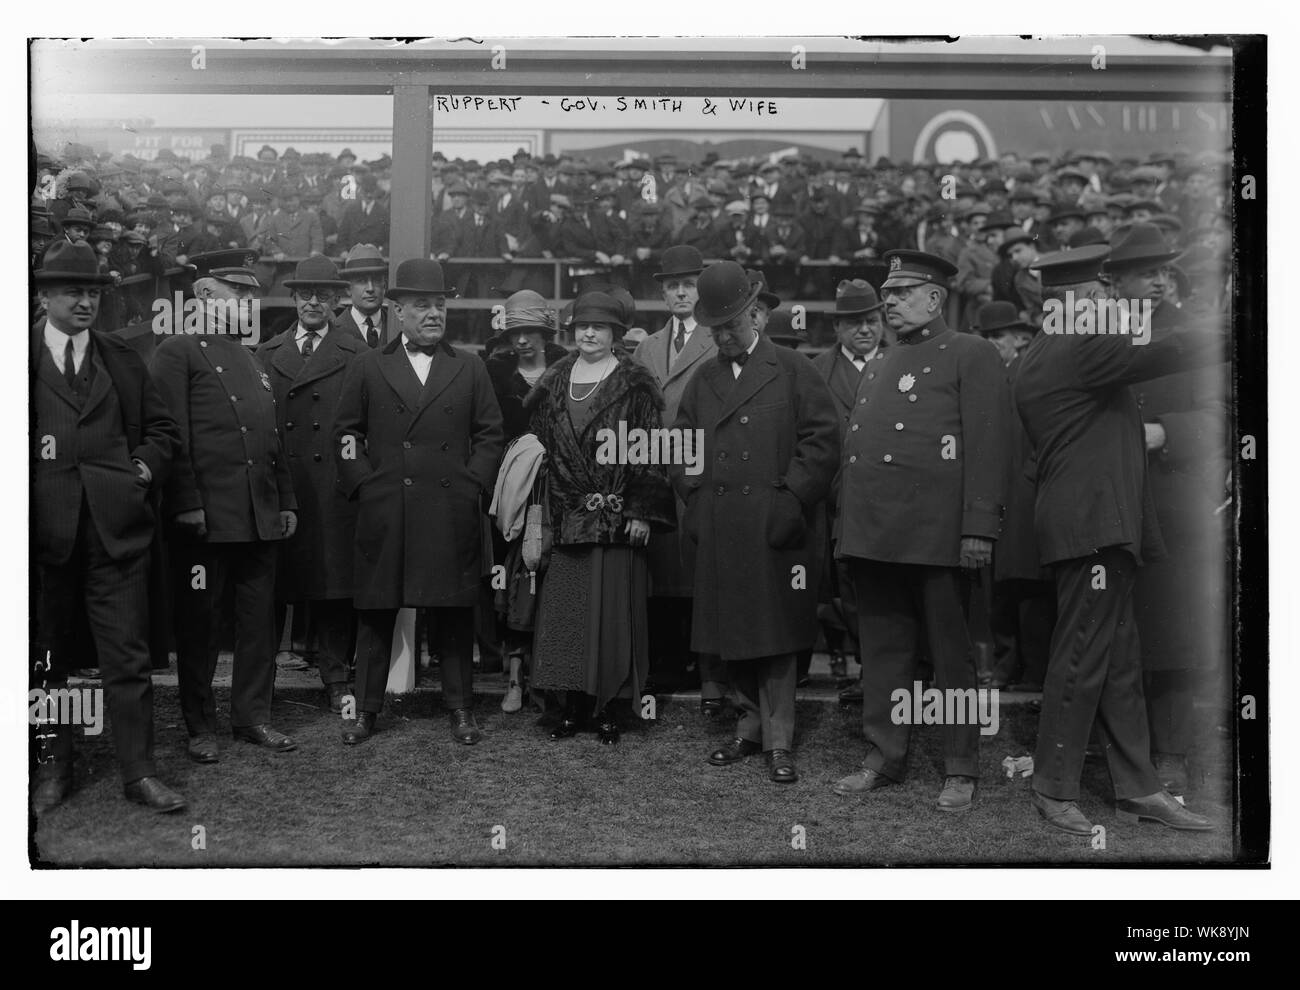 Jakob Ruppert, Gouverneur von New York Al Smith & Frau am Eröffnungstag der Yankee Stadium, 4/18/23 (Baseball) Stockfoto